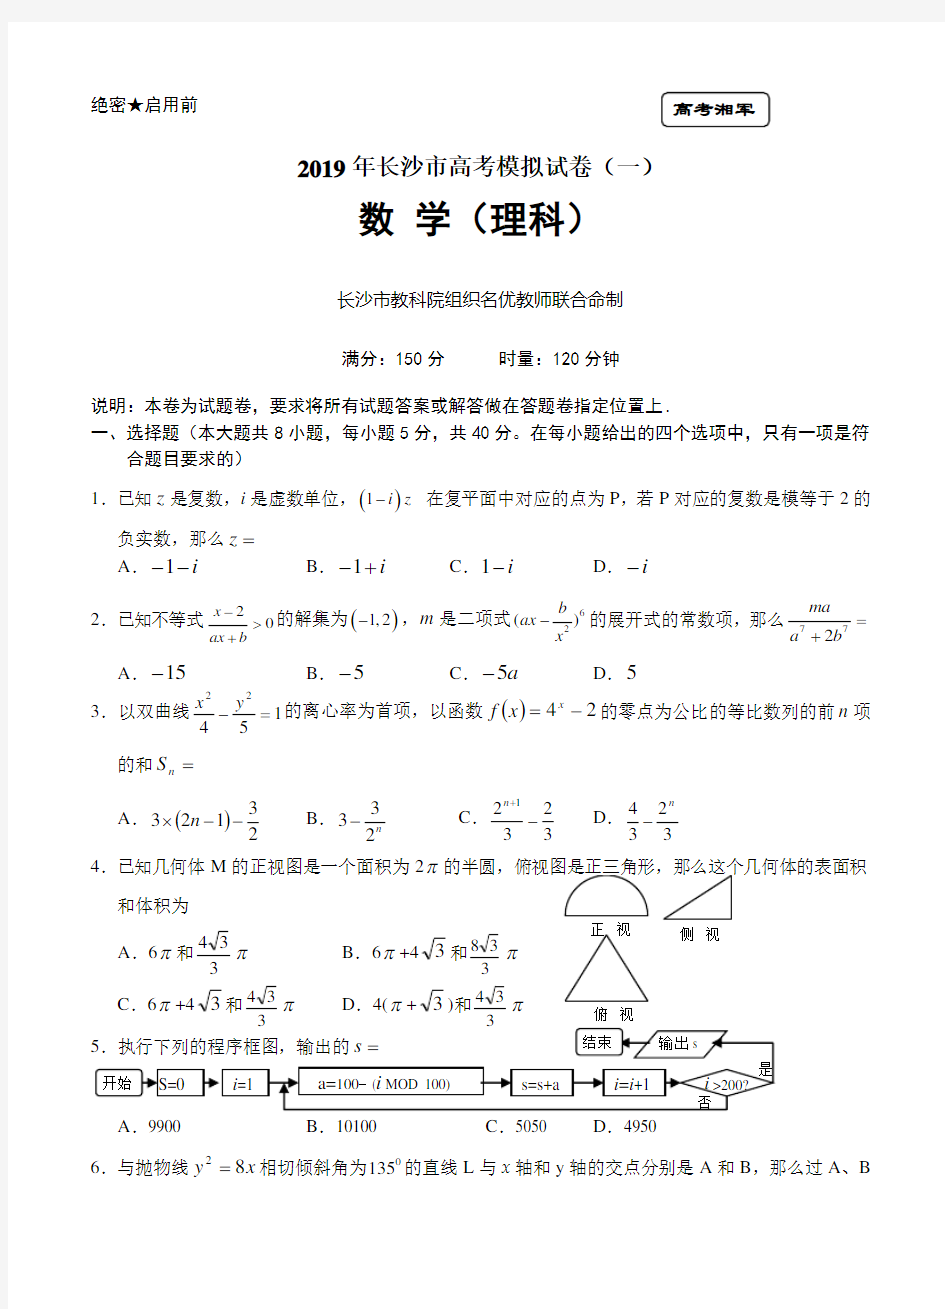 (完整版)湖南省长沙市高三高考模拟数学理试题